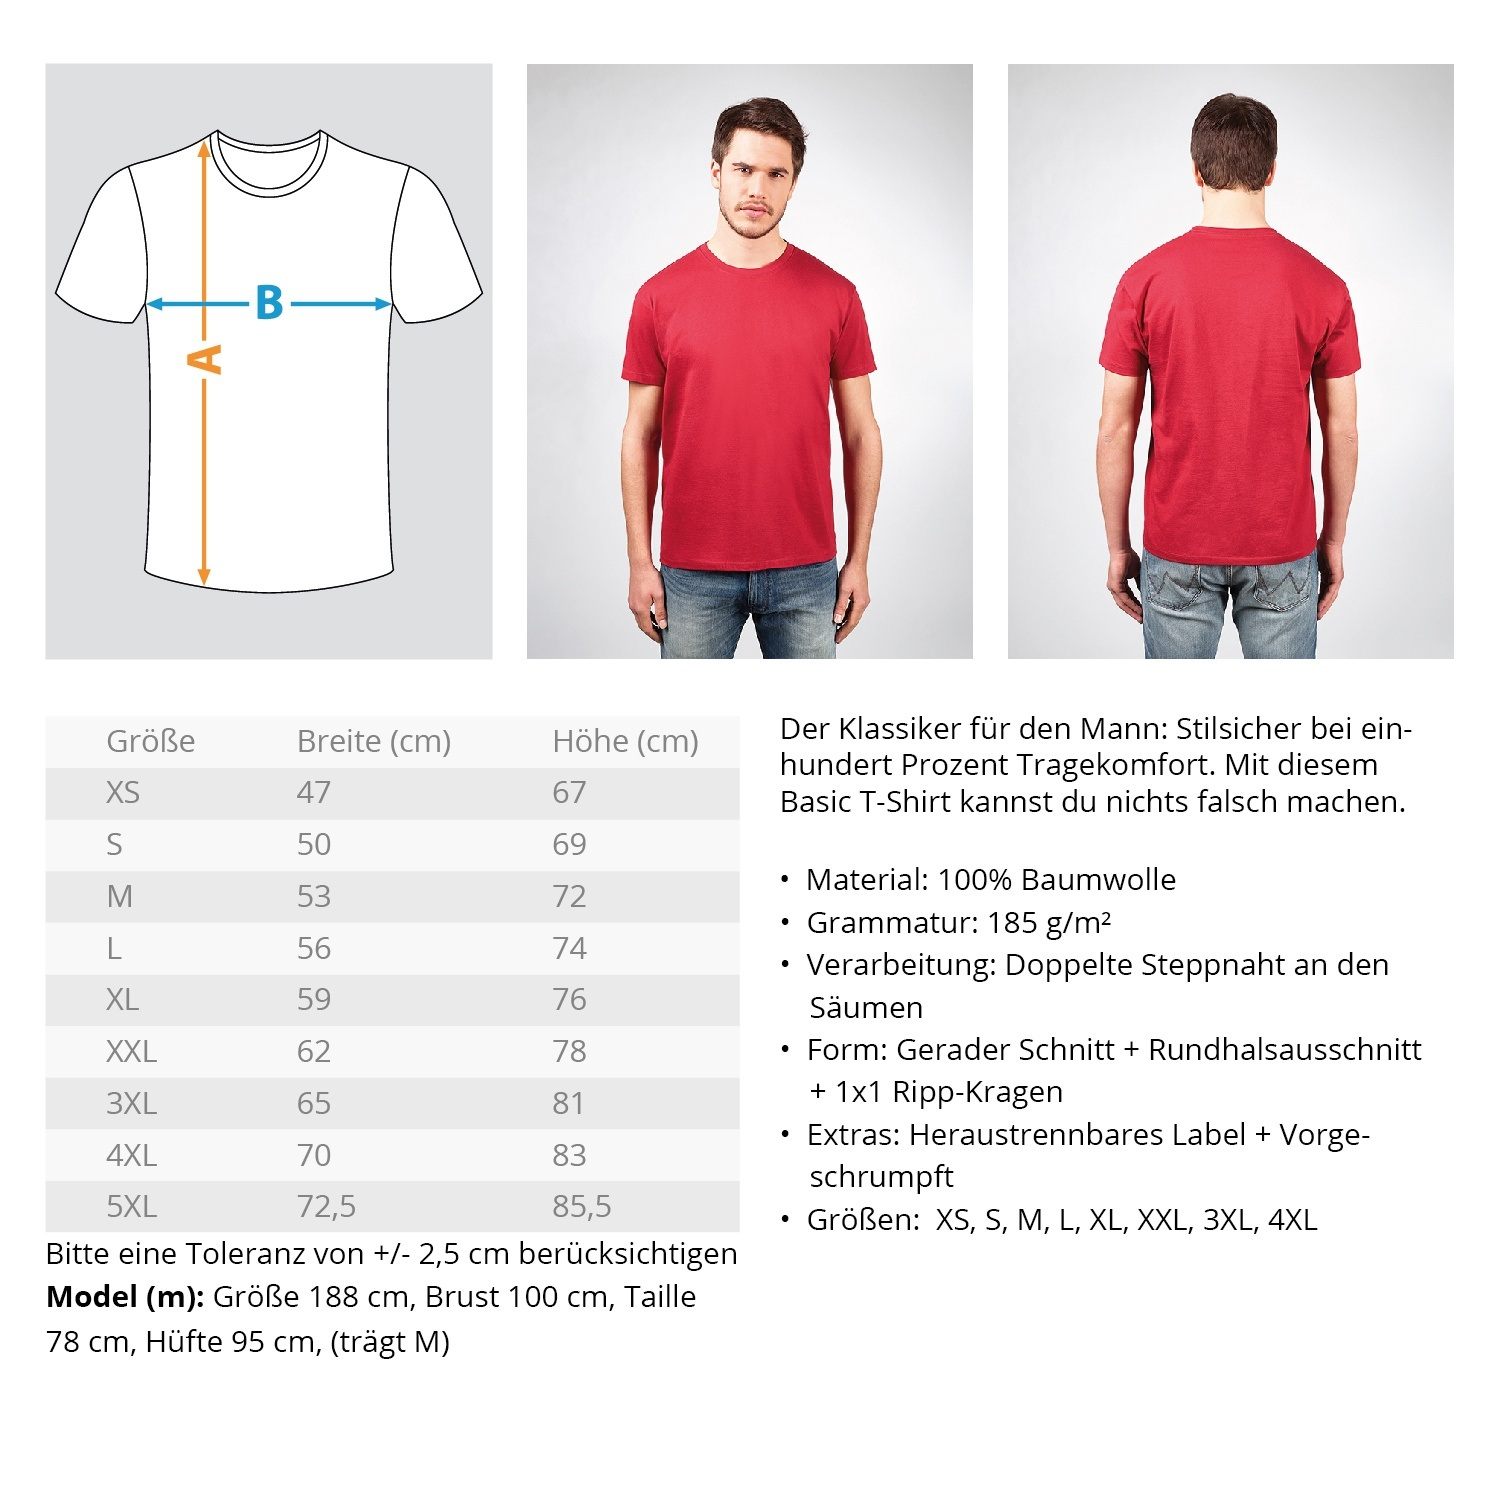 Gerüstbauer T-Shirt - Deutsches Handwerk €21.95 Gerüstbauer - Shop >>